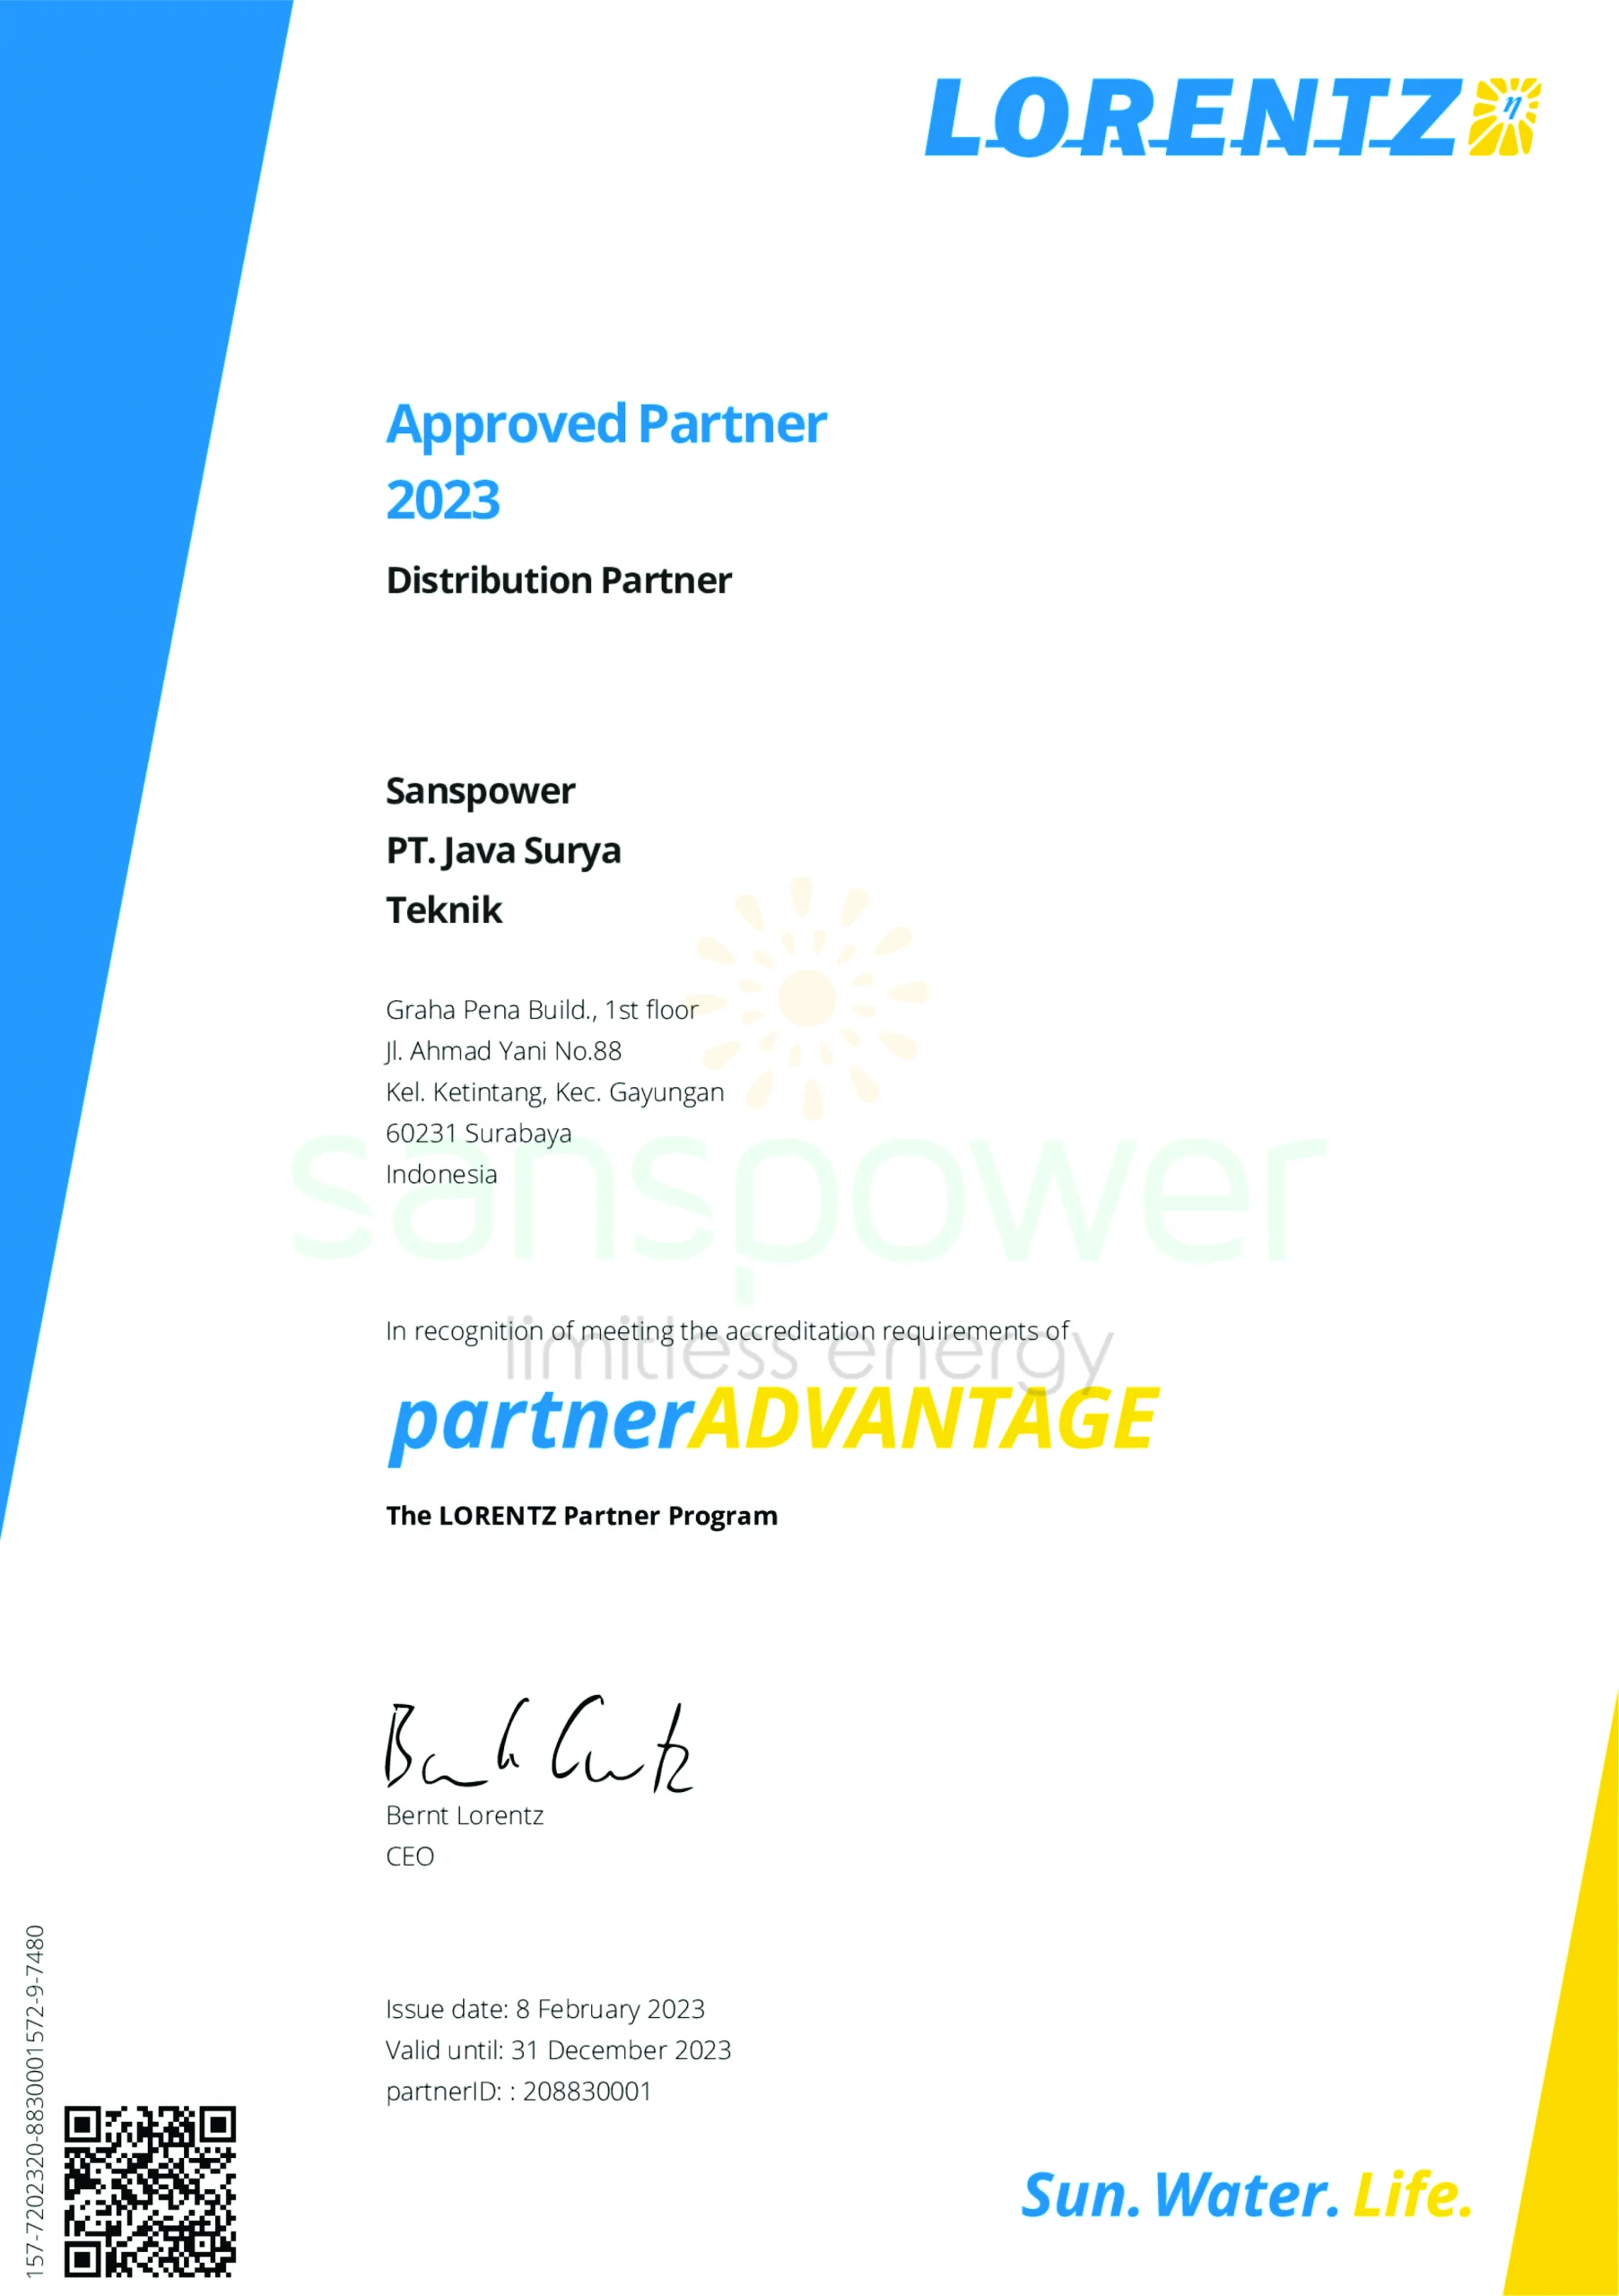 lorentz partner certificate 2023